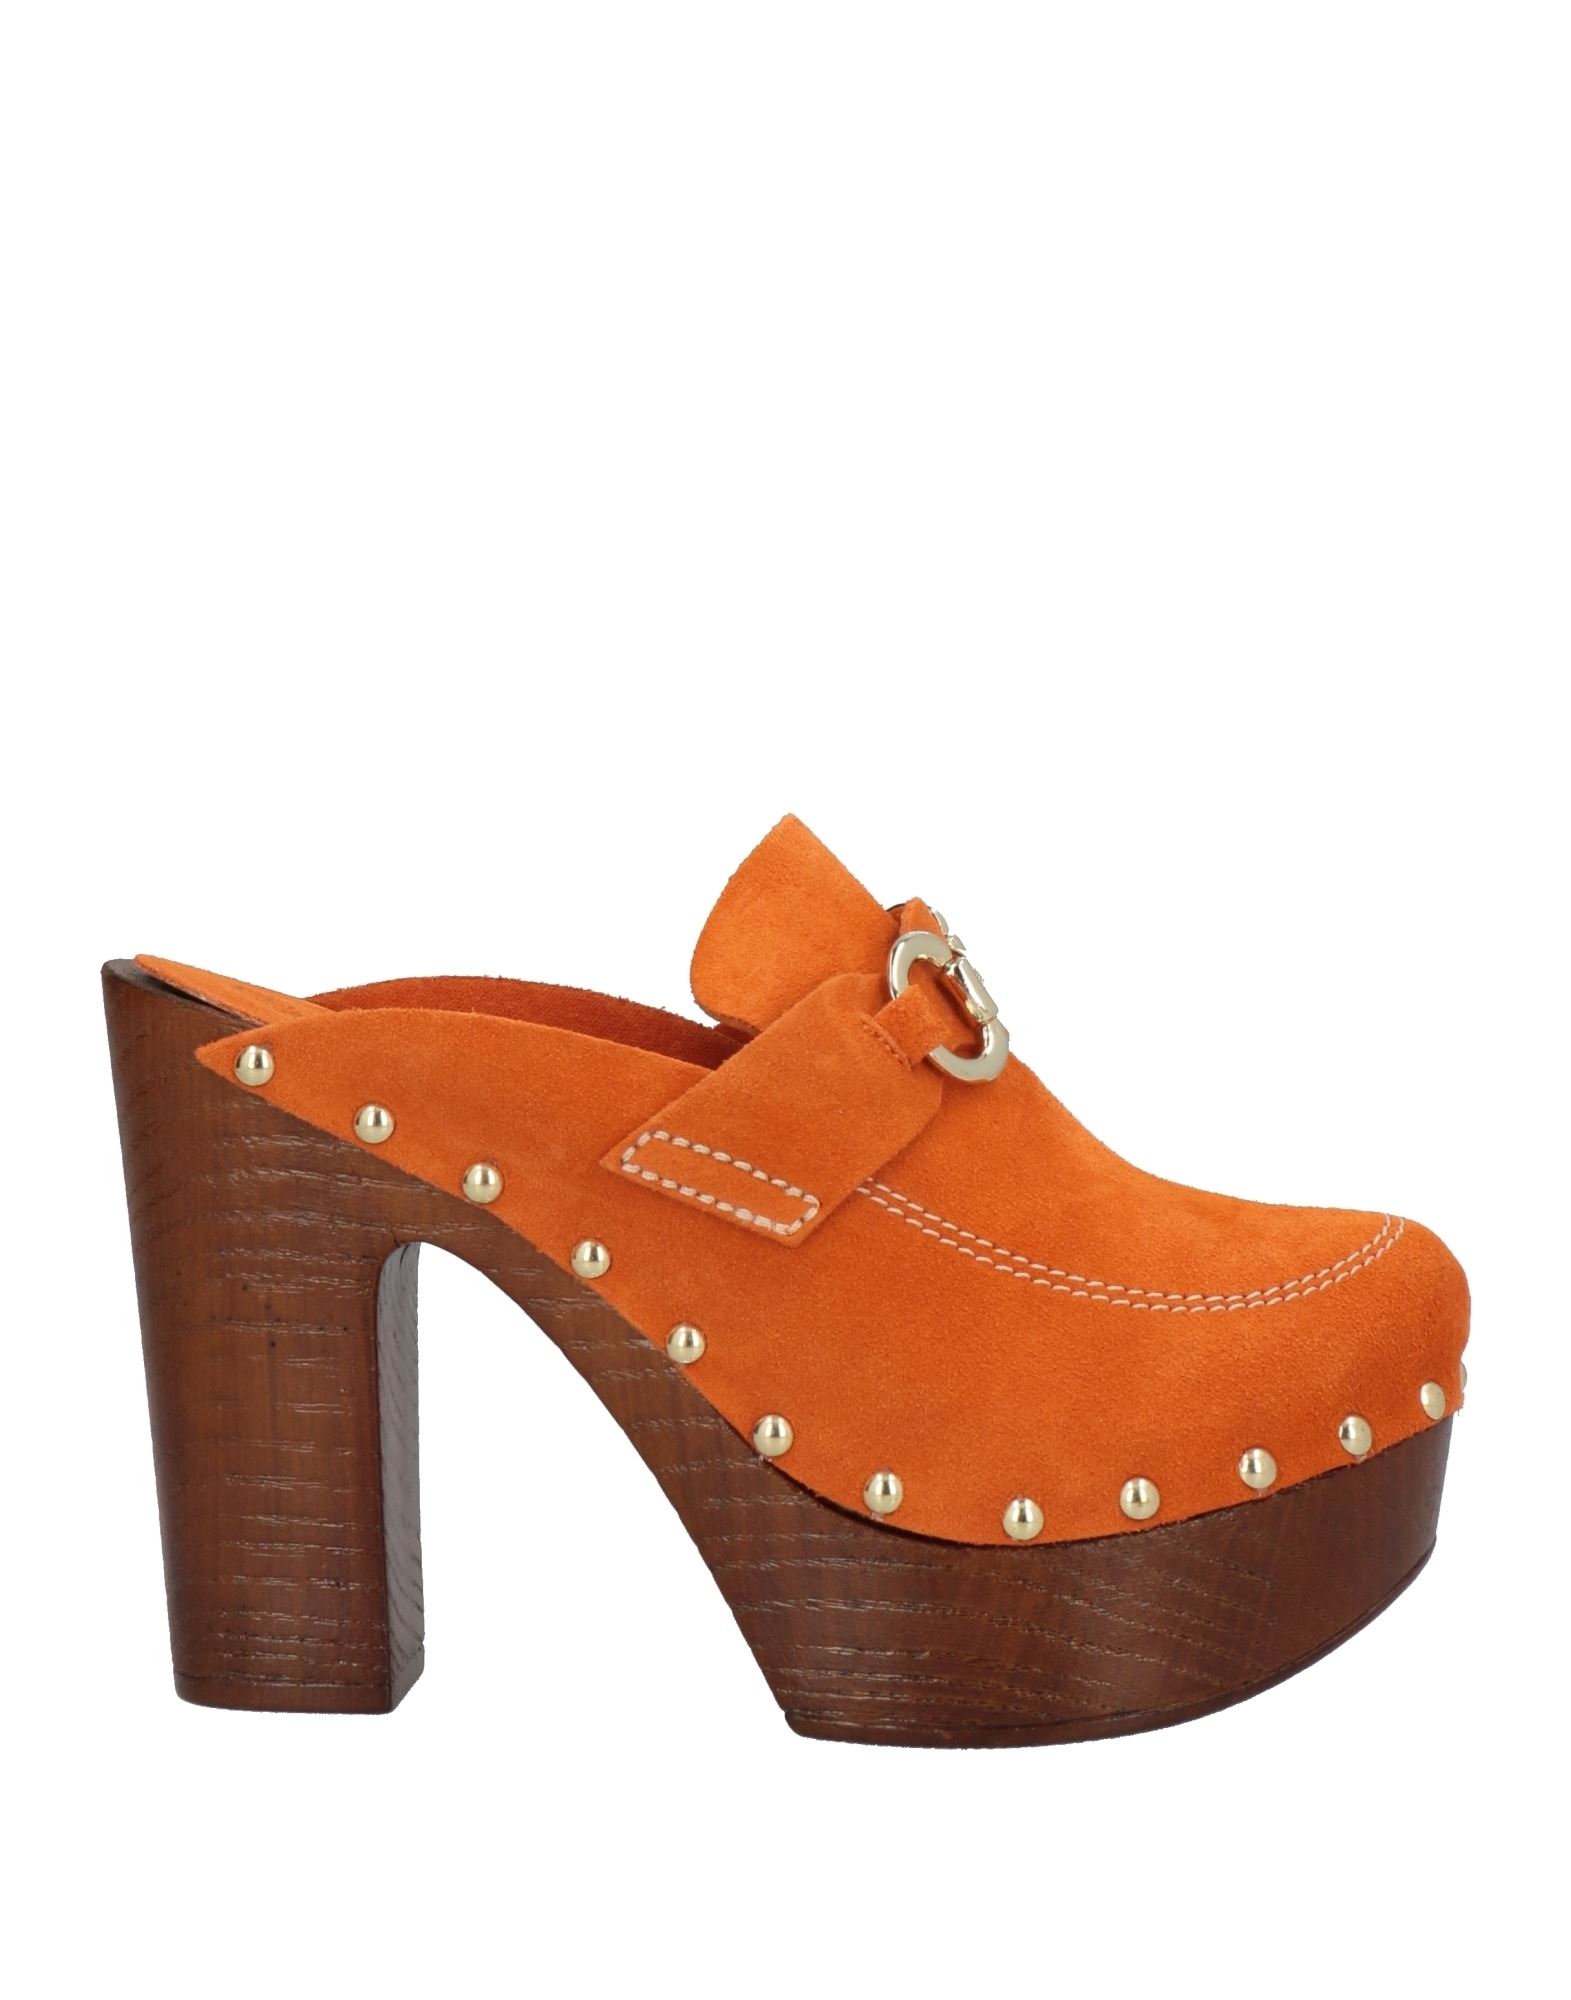 Cafènoir Woman Mules & Clogs Orange Size 7 Soft Leather